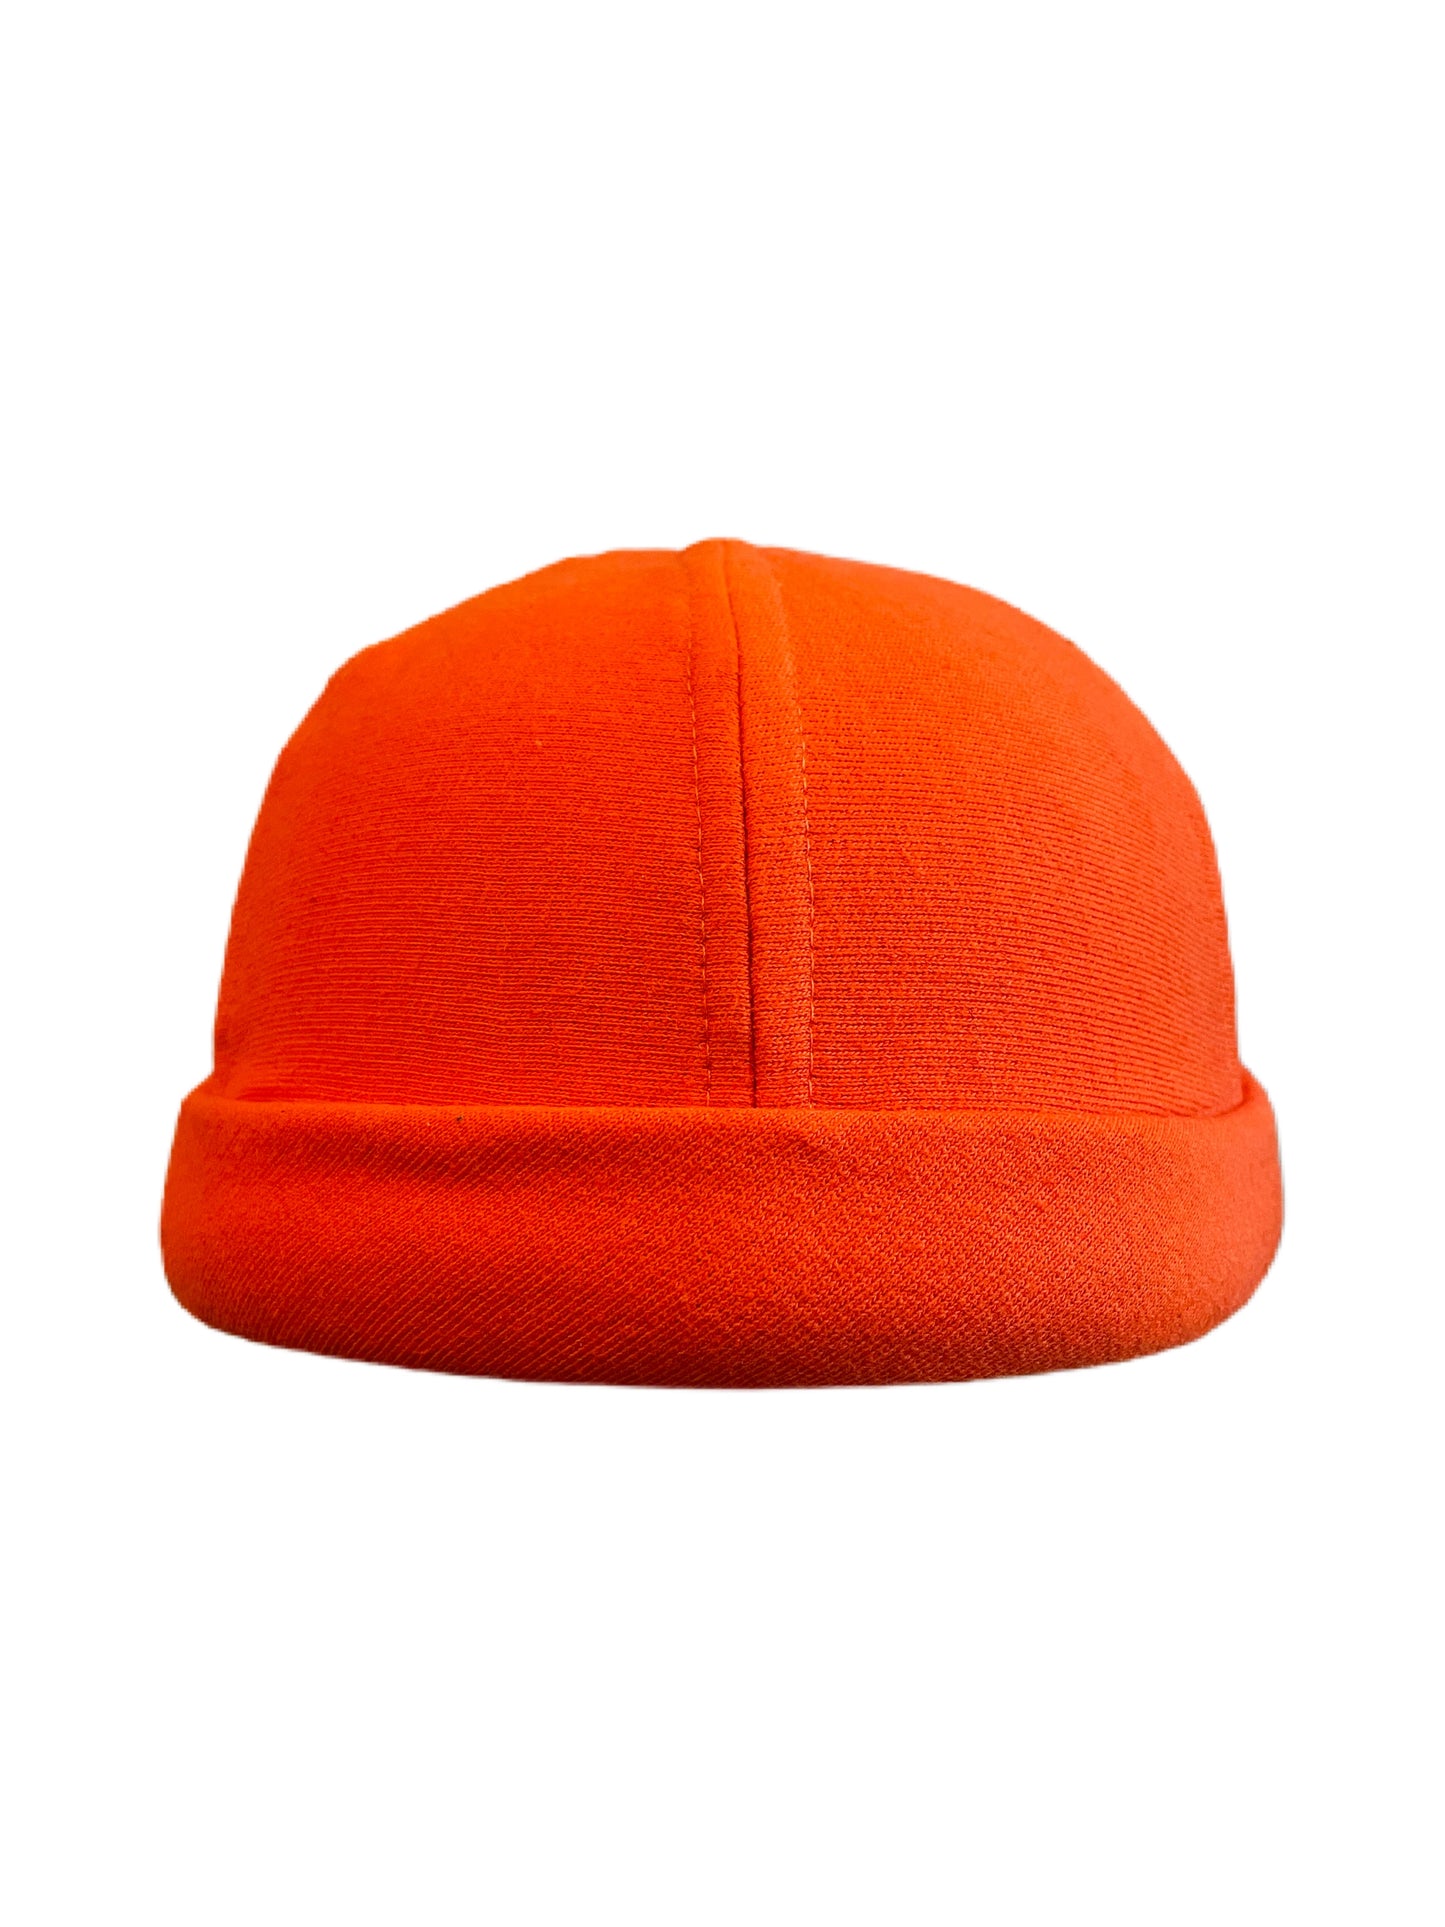 Orange Knit CrewCap [OG]